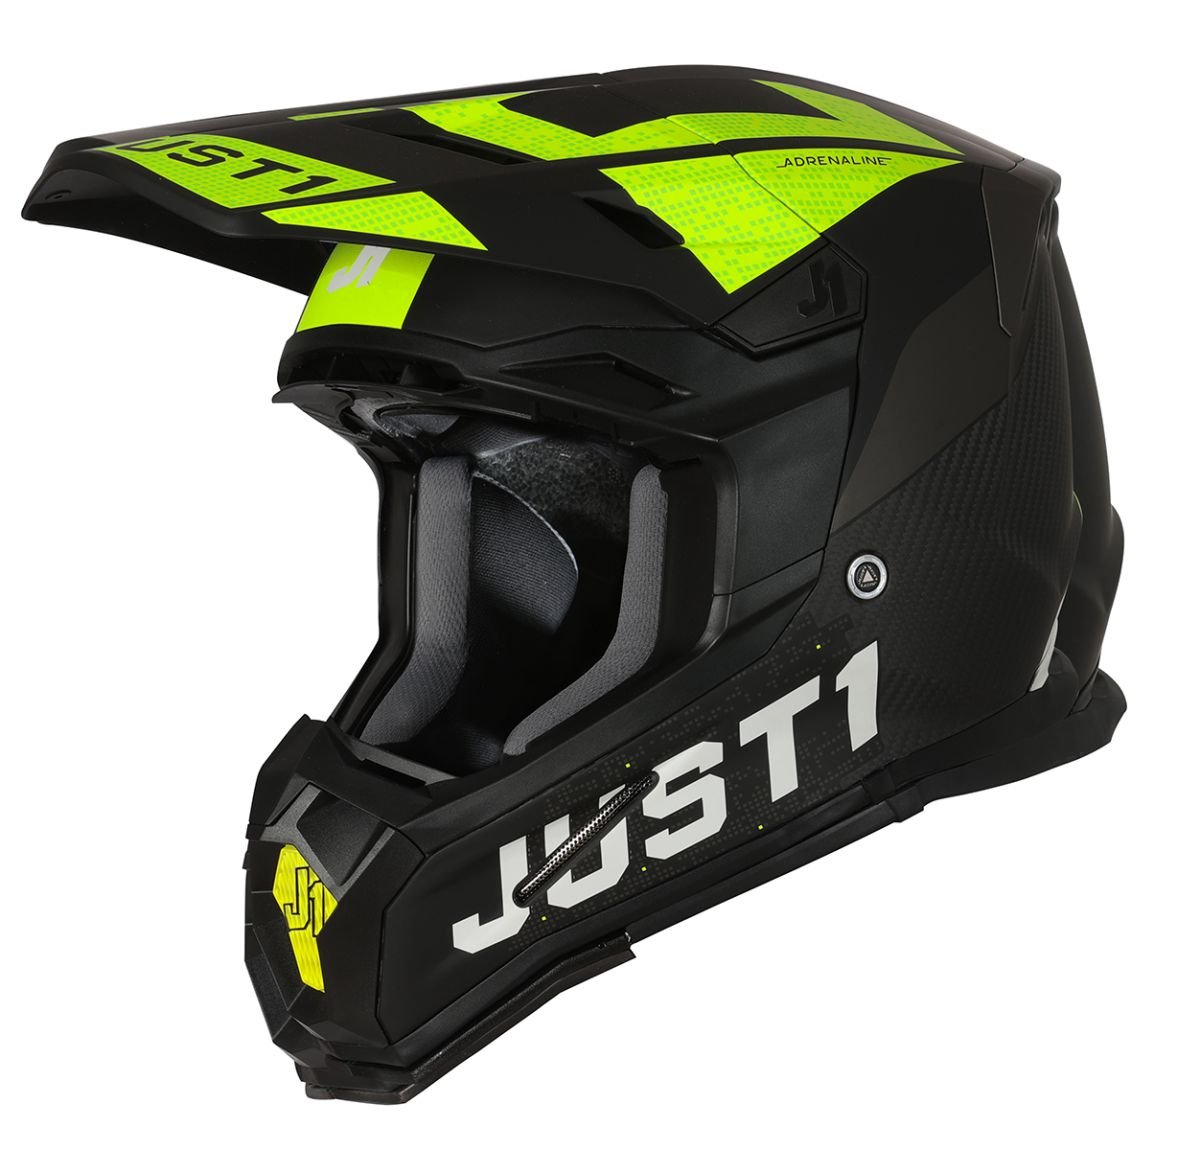 Image of Just1 Helmet J-22 Adrenaline Black Yellow Fluo Carbon Matt Offroad Helmet Size S ID 8055727450319